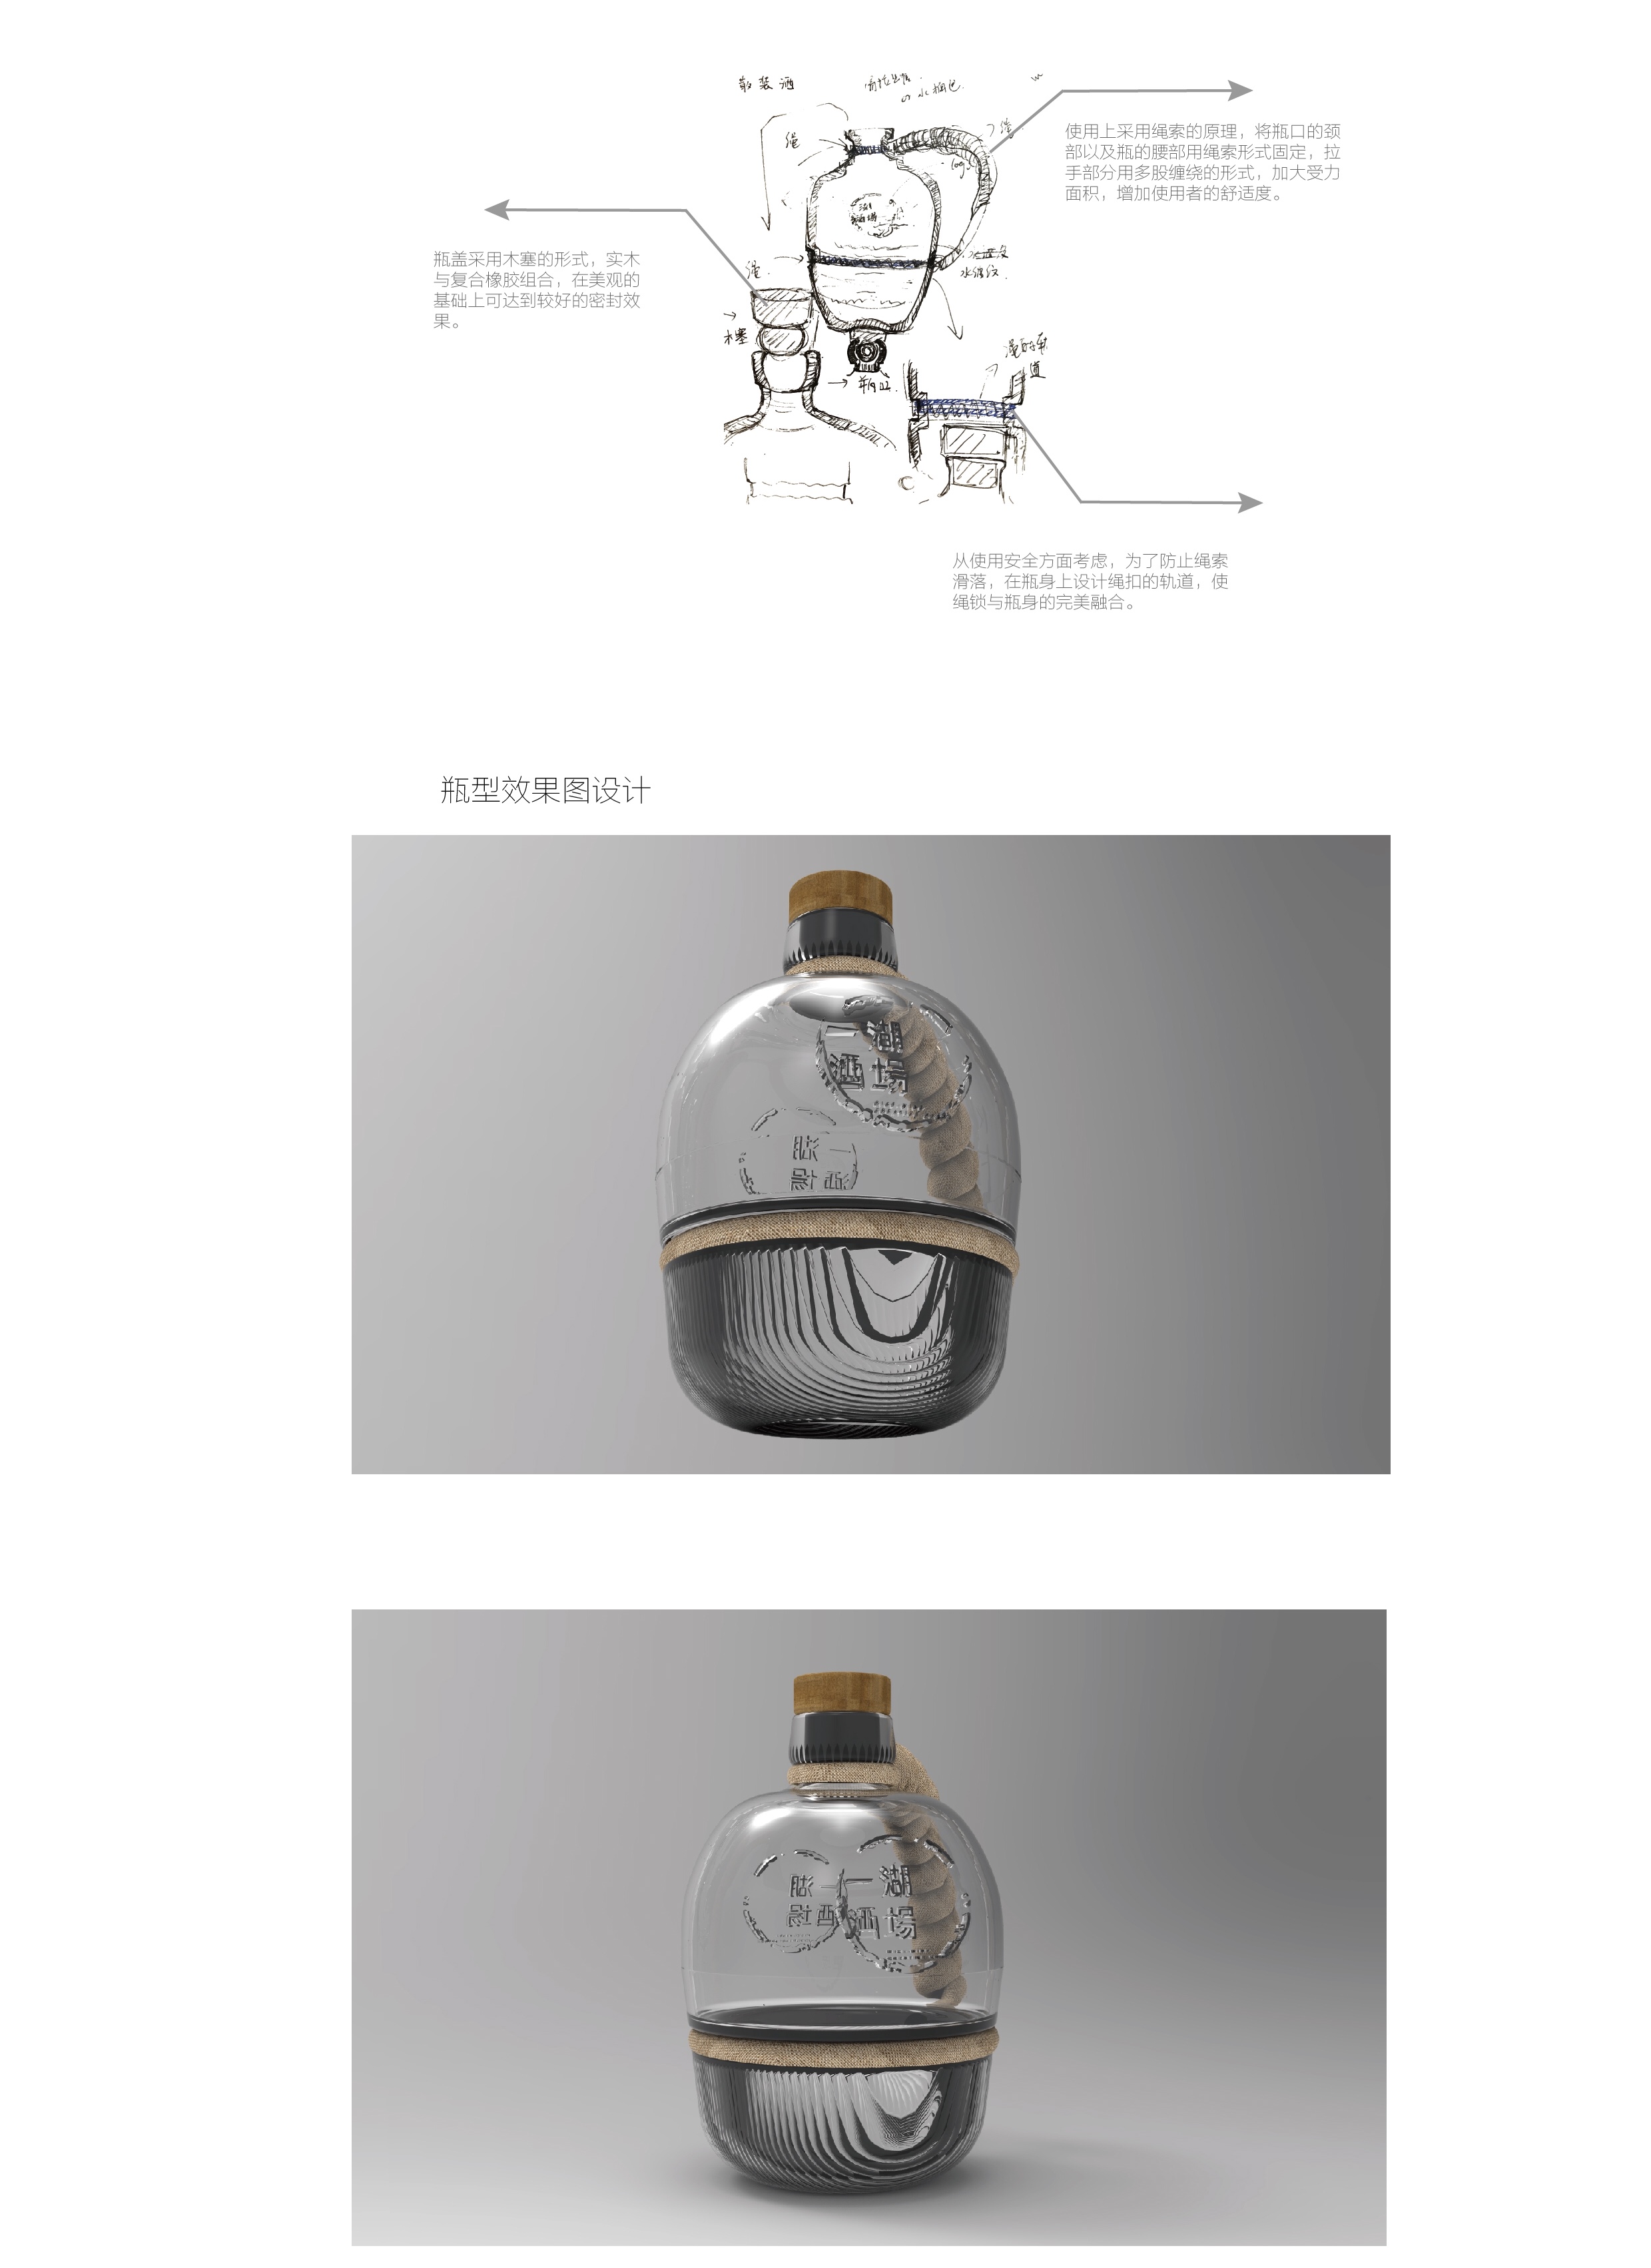 酒瓶概念设计